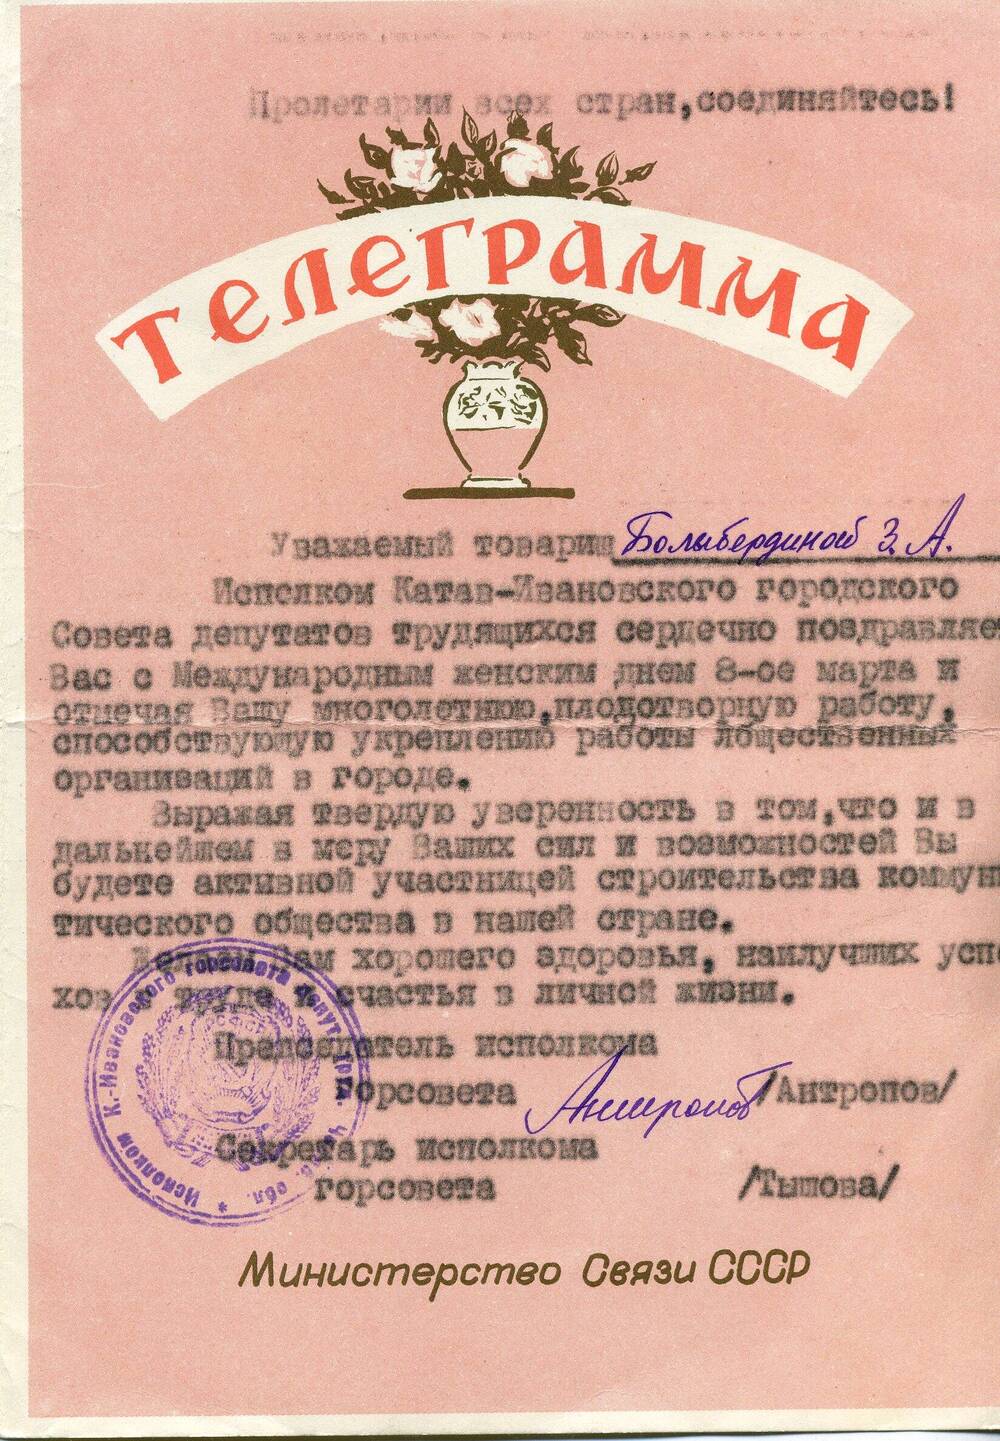 Телеграмма-поздравление Балыбердиной  Зои  Анисимовны с днем 8 марта, от председателя исполкома горсовета Антропова.